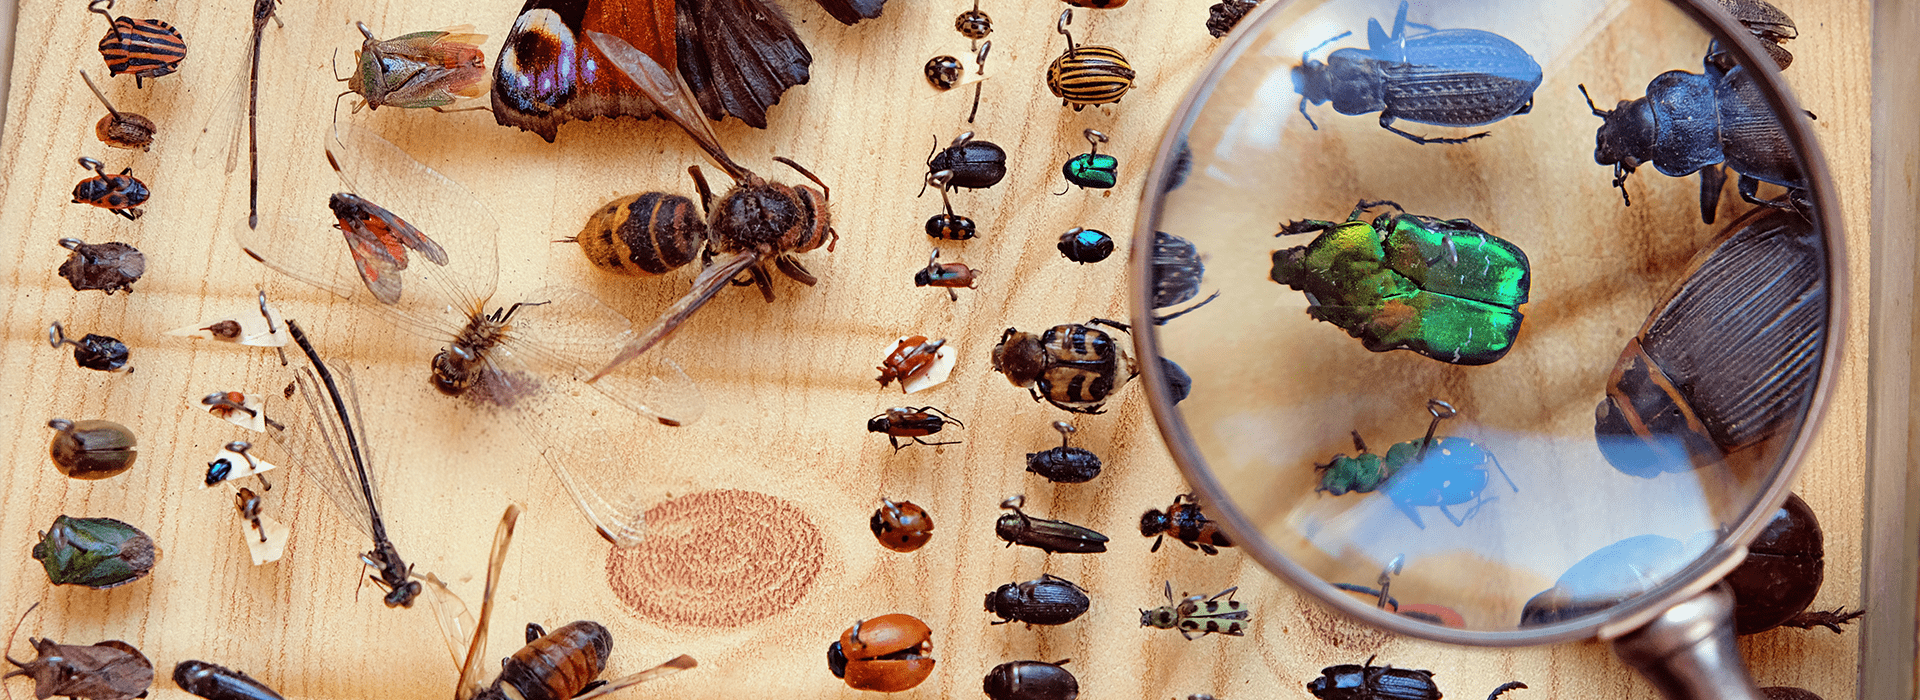 an entomology display case in wichita kansas